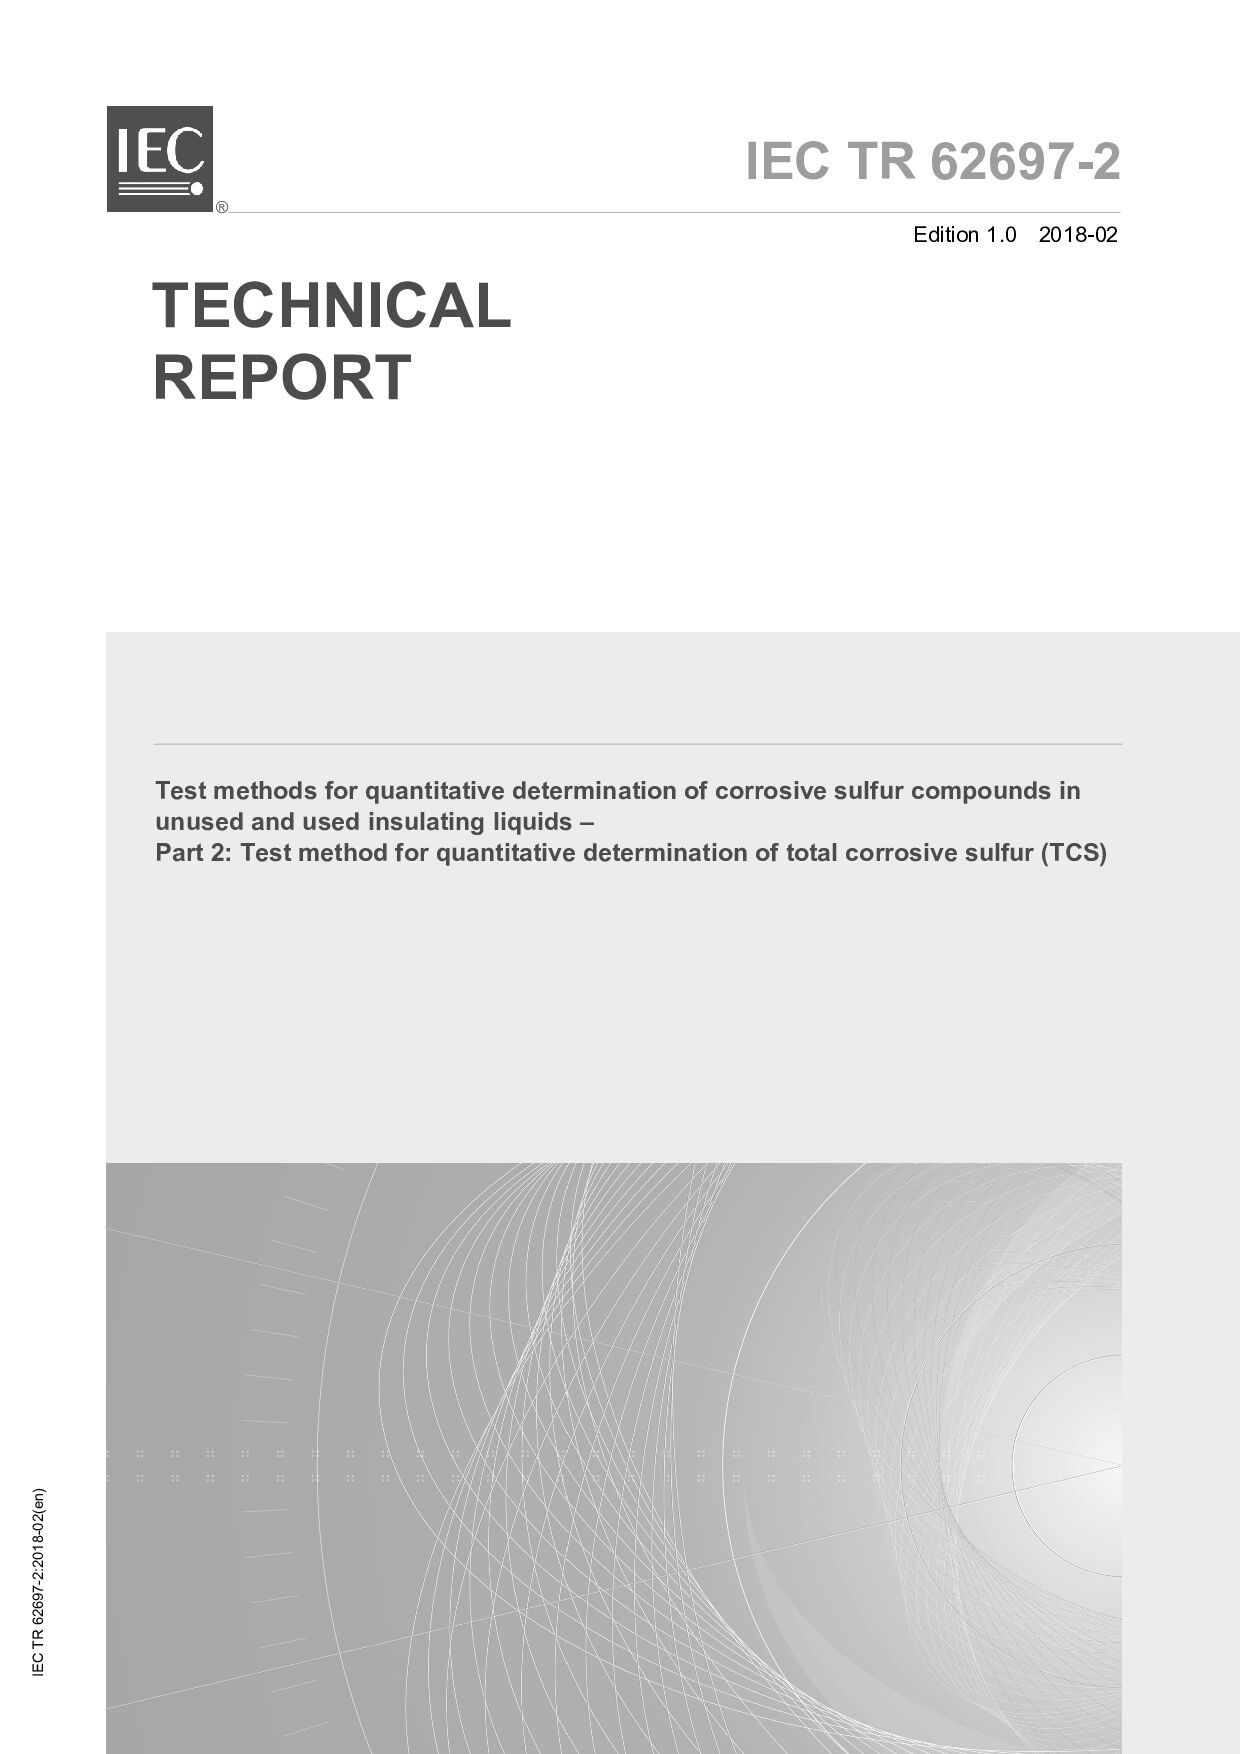 IEC TR 62697-2:2018